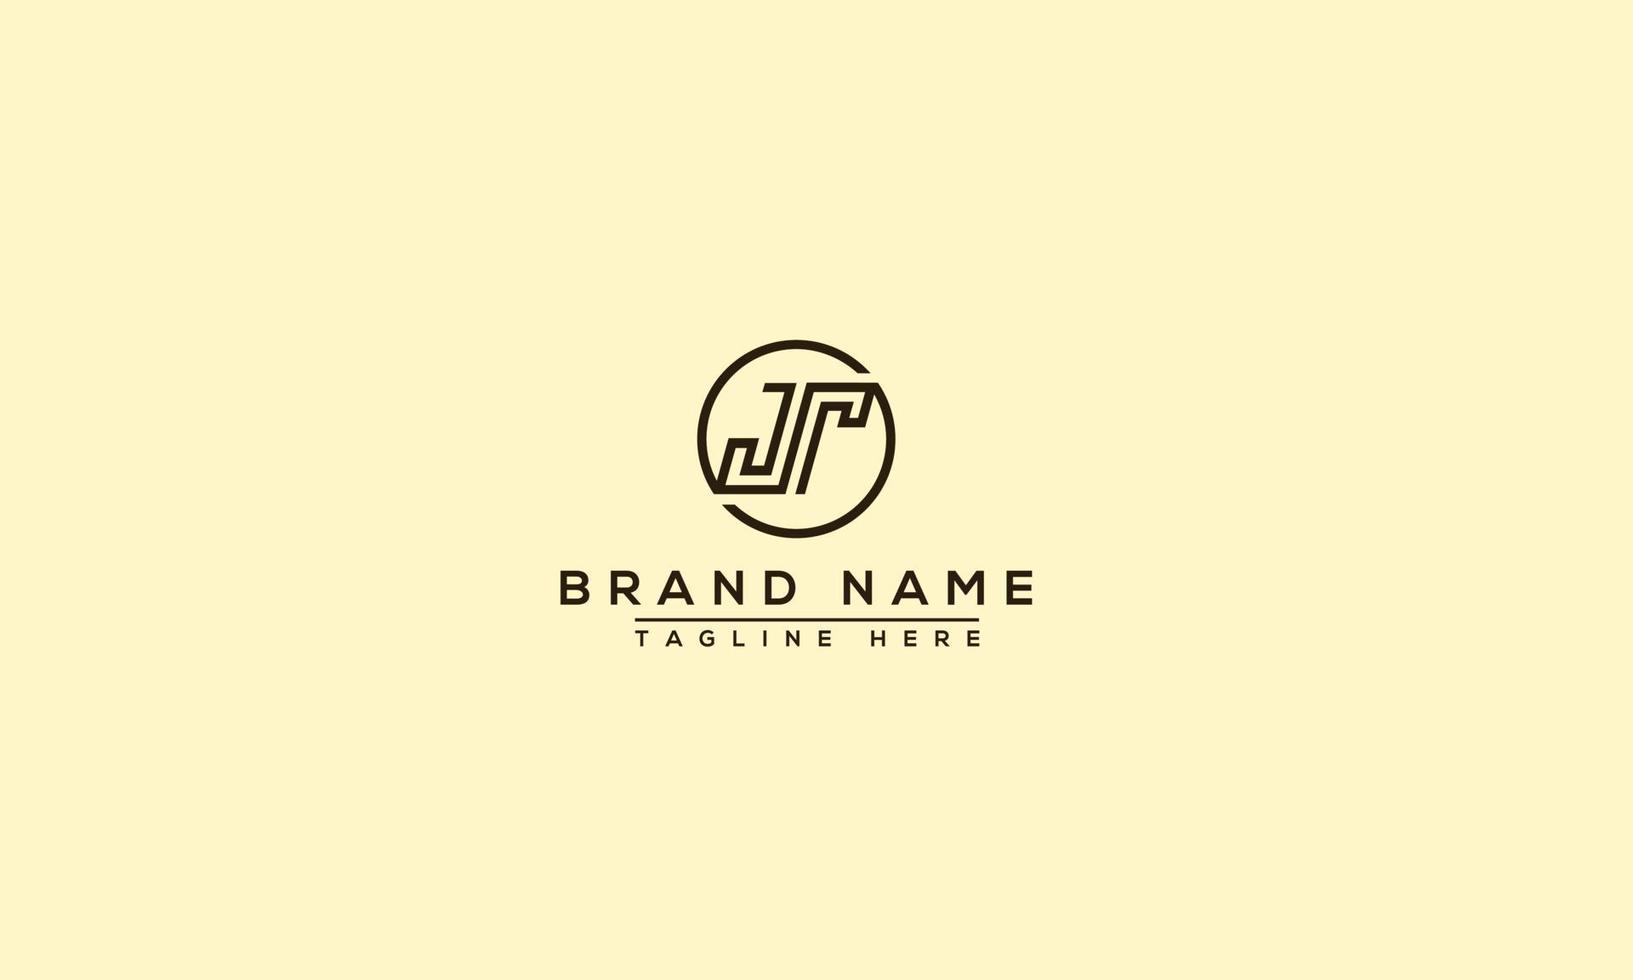 jt logotyp design mall vektor grafisk branding element.